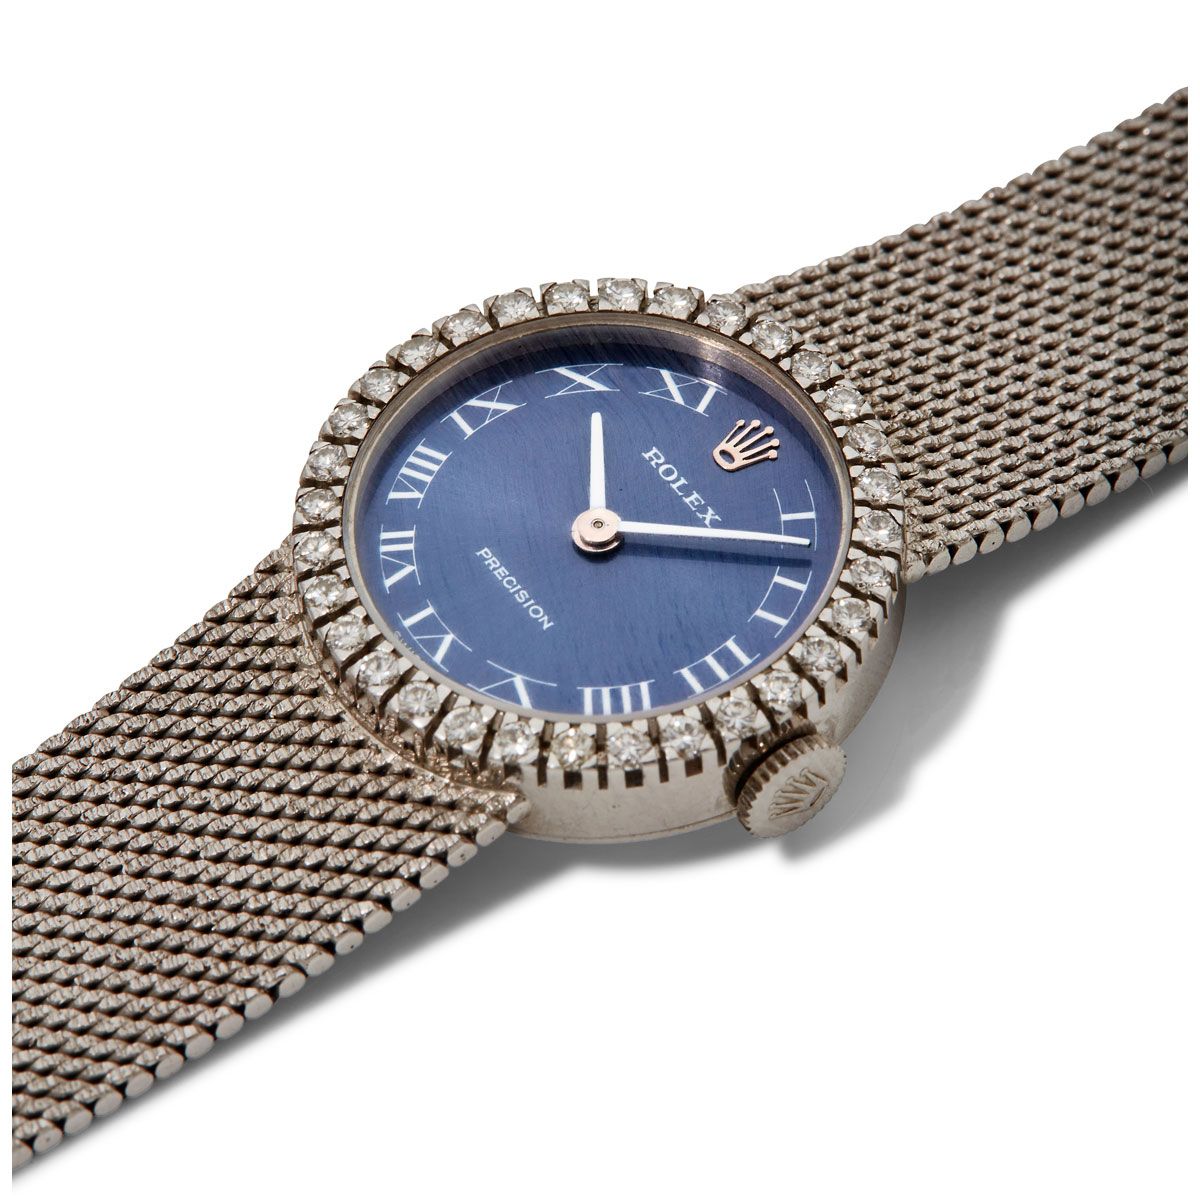 Null Rolex, Precison, n. 1837xxxx, 1990 circa.

Elegante orologio da donna in or&hellip;